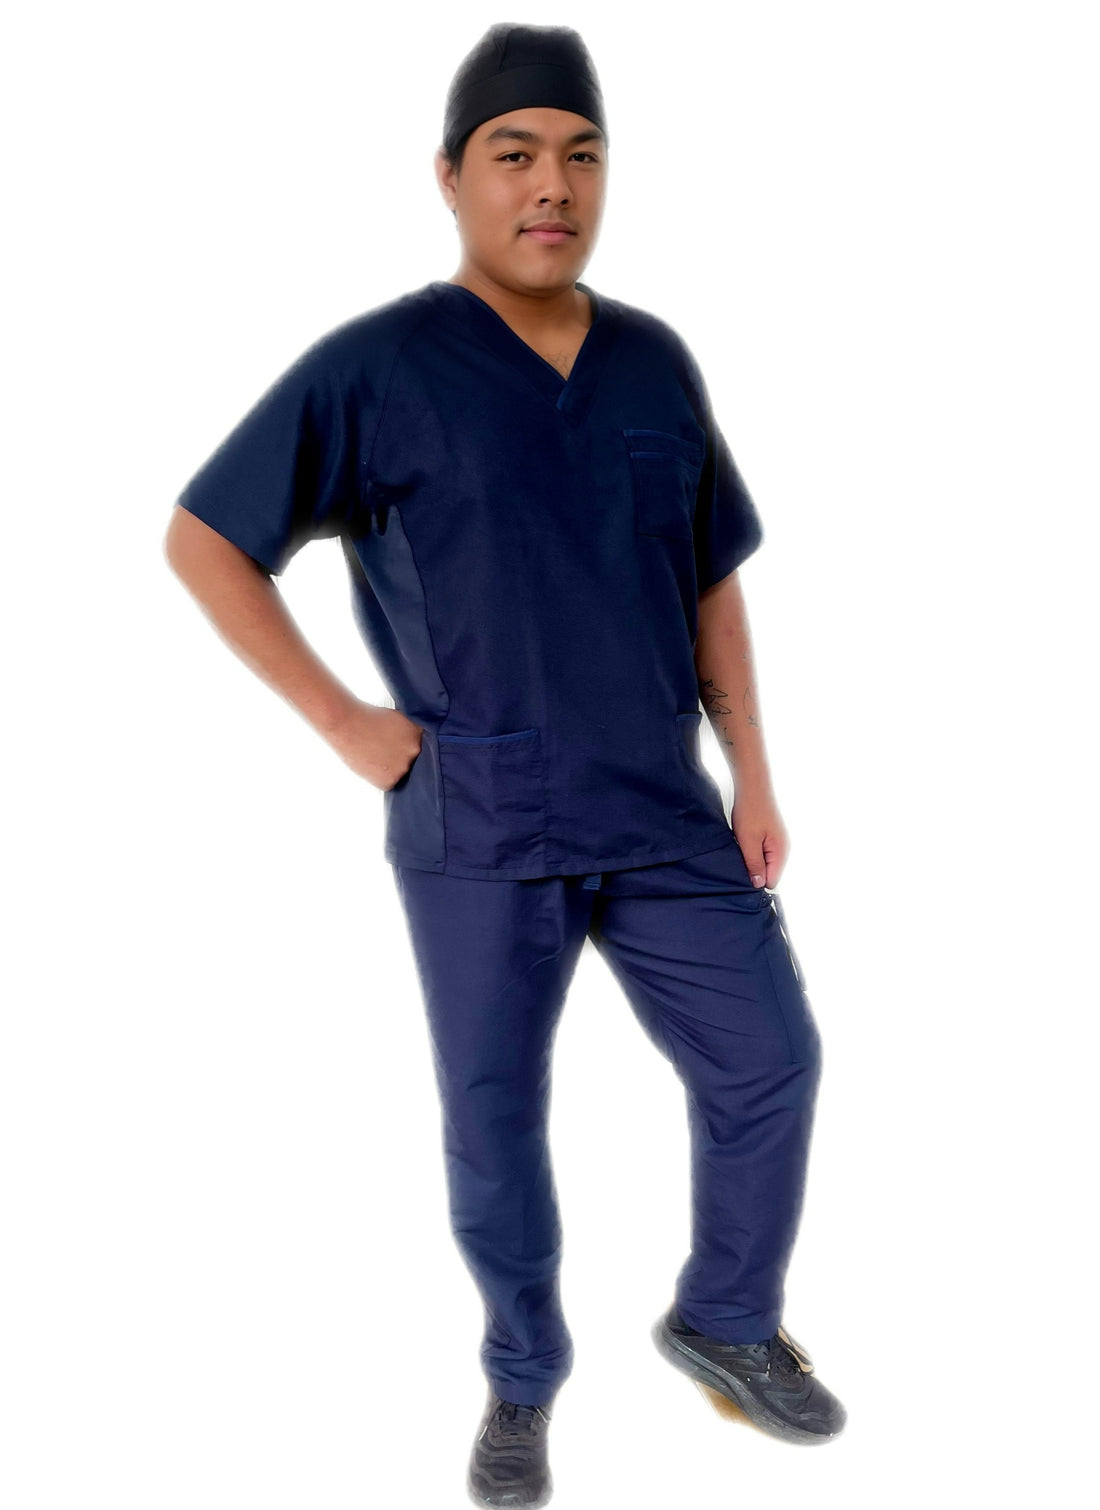 Uniformes Stanford quirúrgico azul marino de pantalones quirúrgicos rectos y filipina quirúrgica Guatemala. Es opción increíble cómoda y práctica para tu trabajo médico. Quirúrgico moderno de más alta calidad, hecho en México 